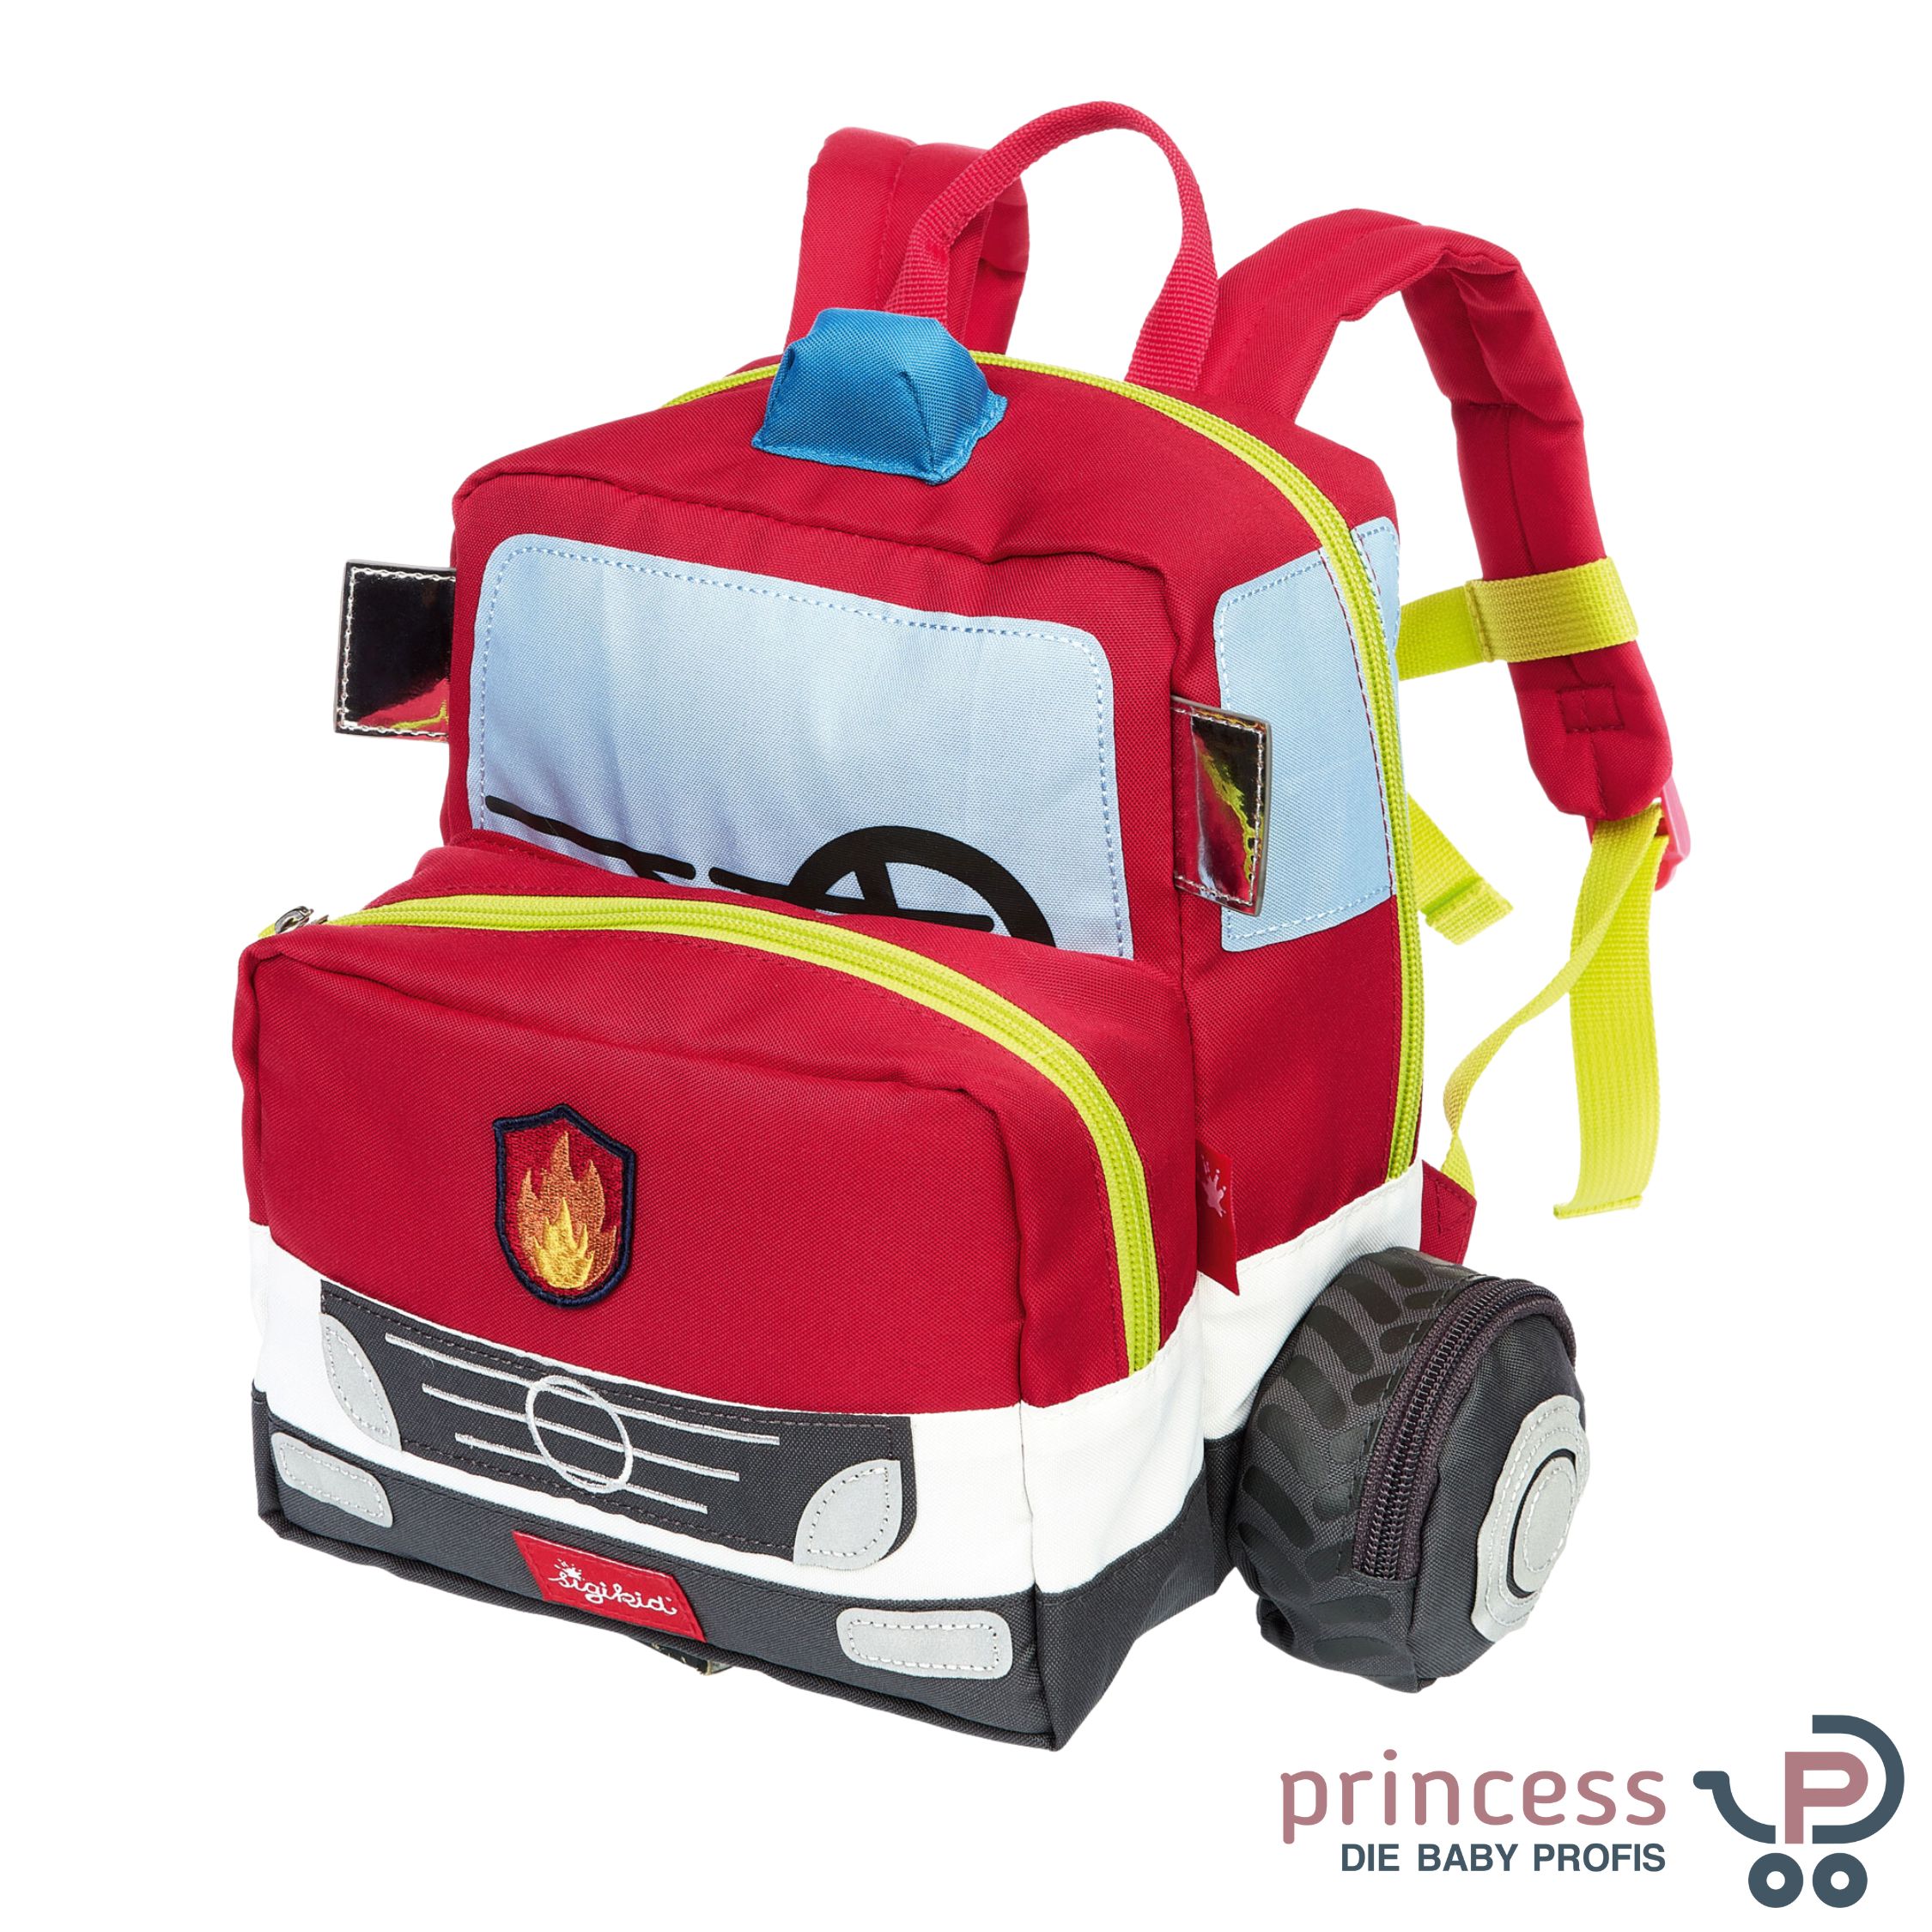 Sigikid Kinderrucksack Kinderwagen - Onlineshop Feuerwehrauto Princess